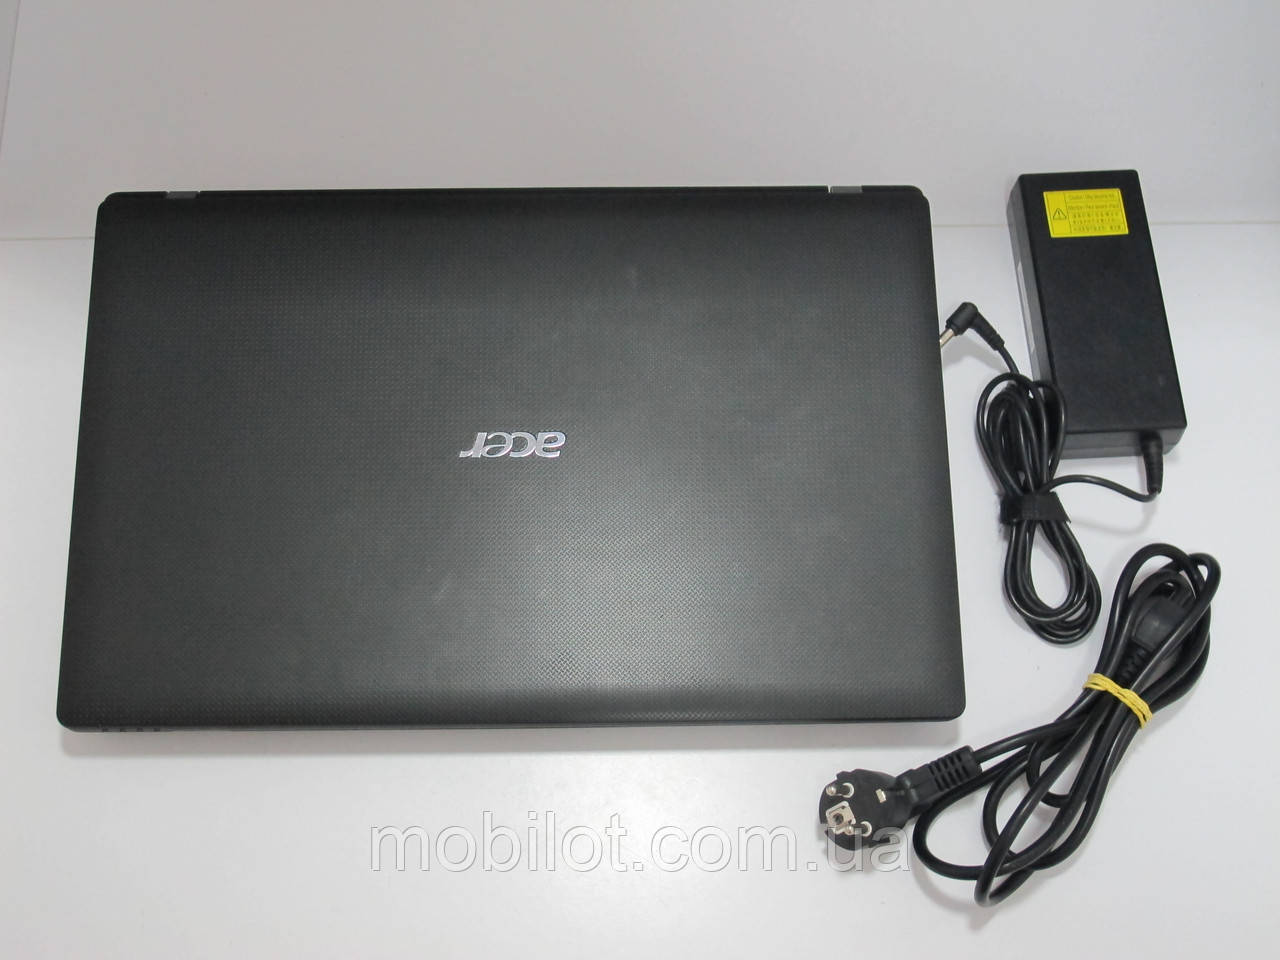 Ноутбук Acer Aspire 7750 (NR-3928)Нет в наличии